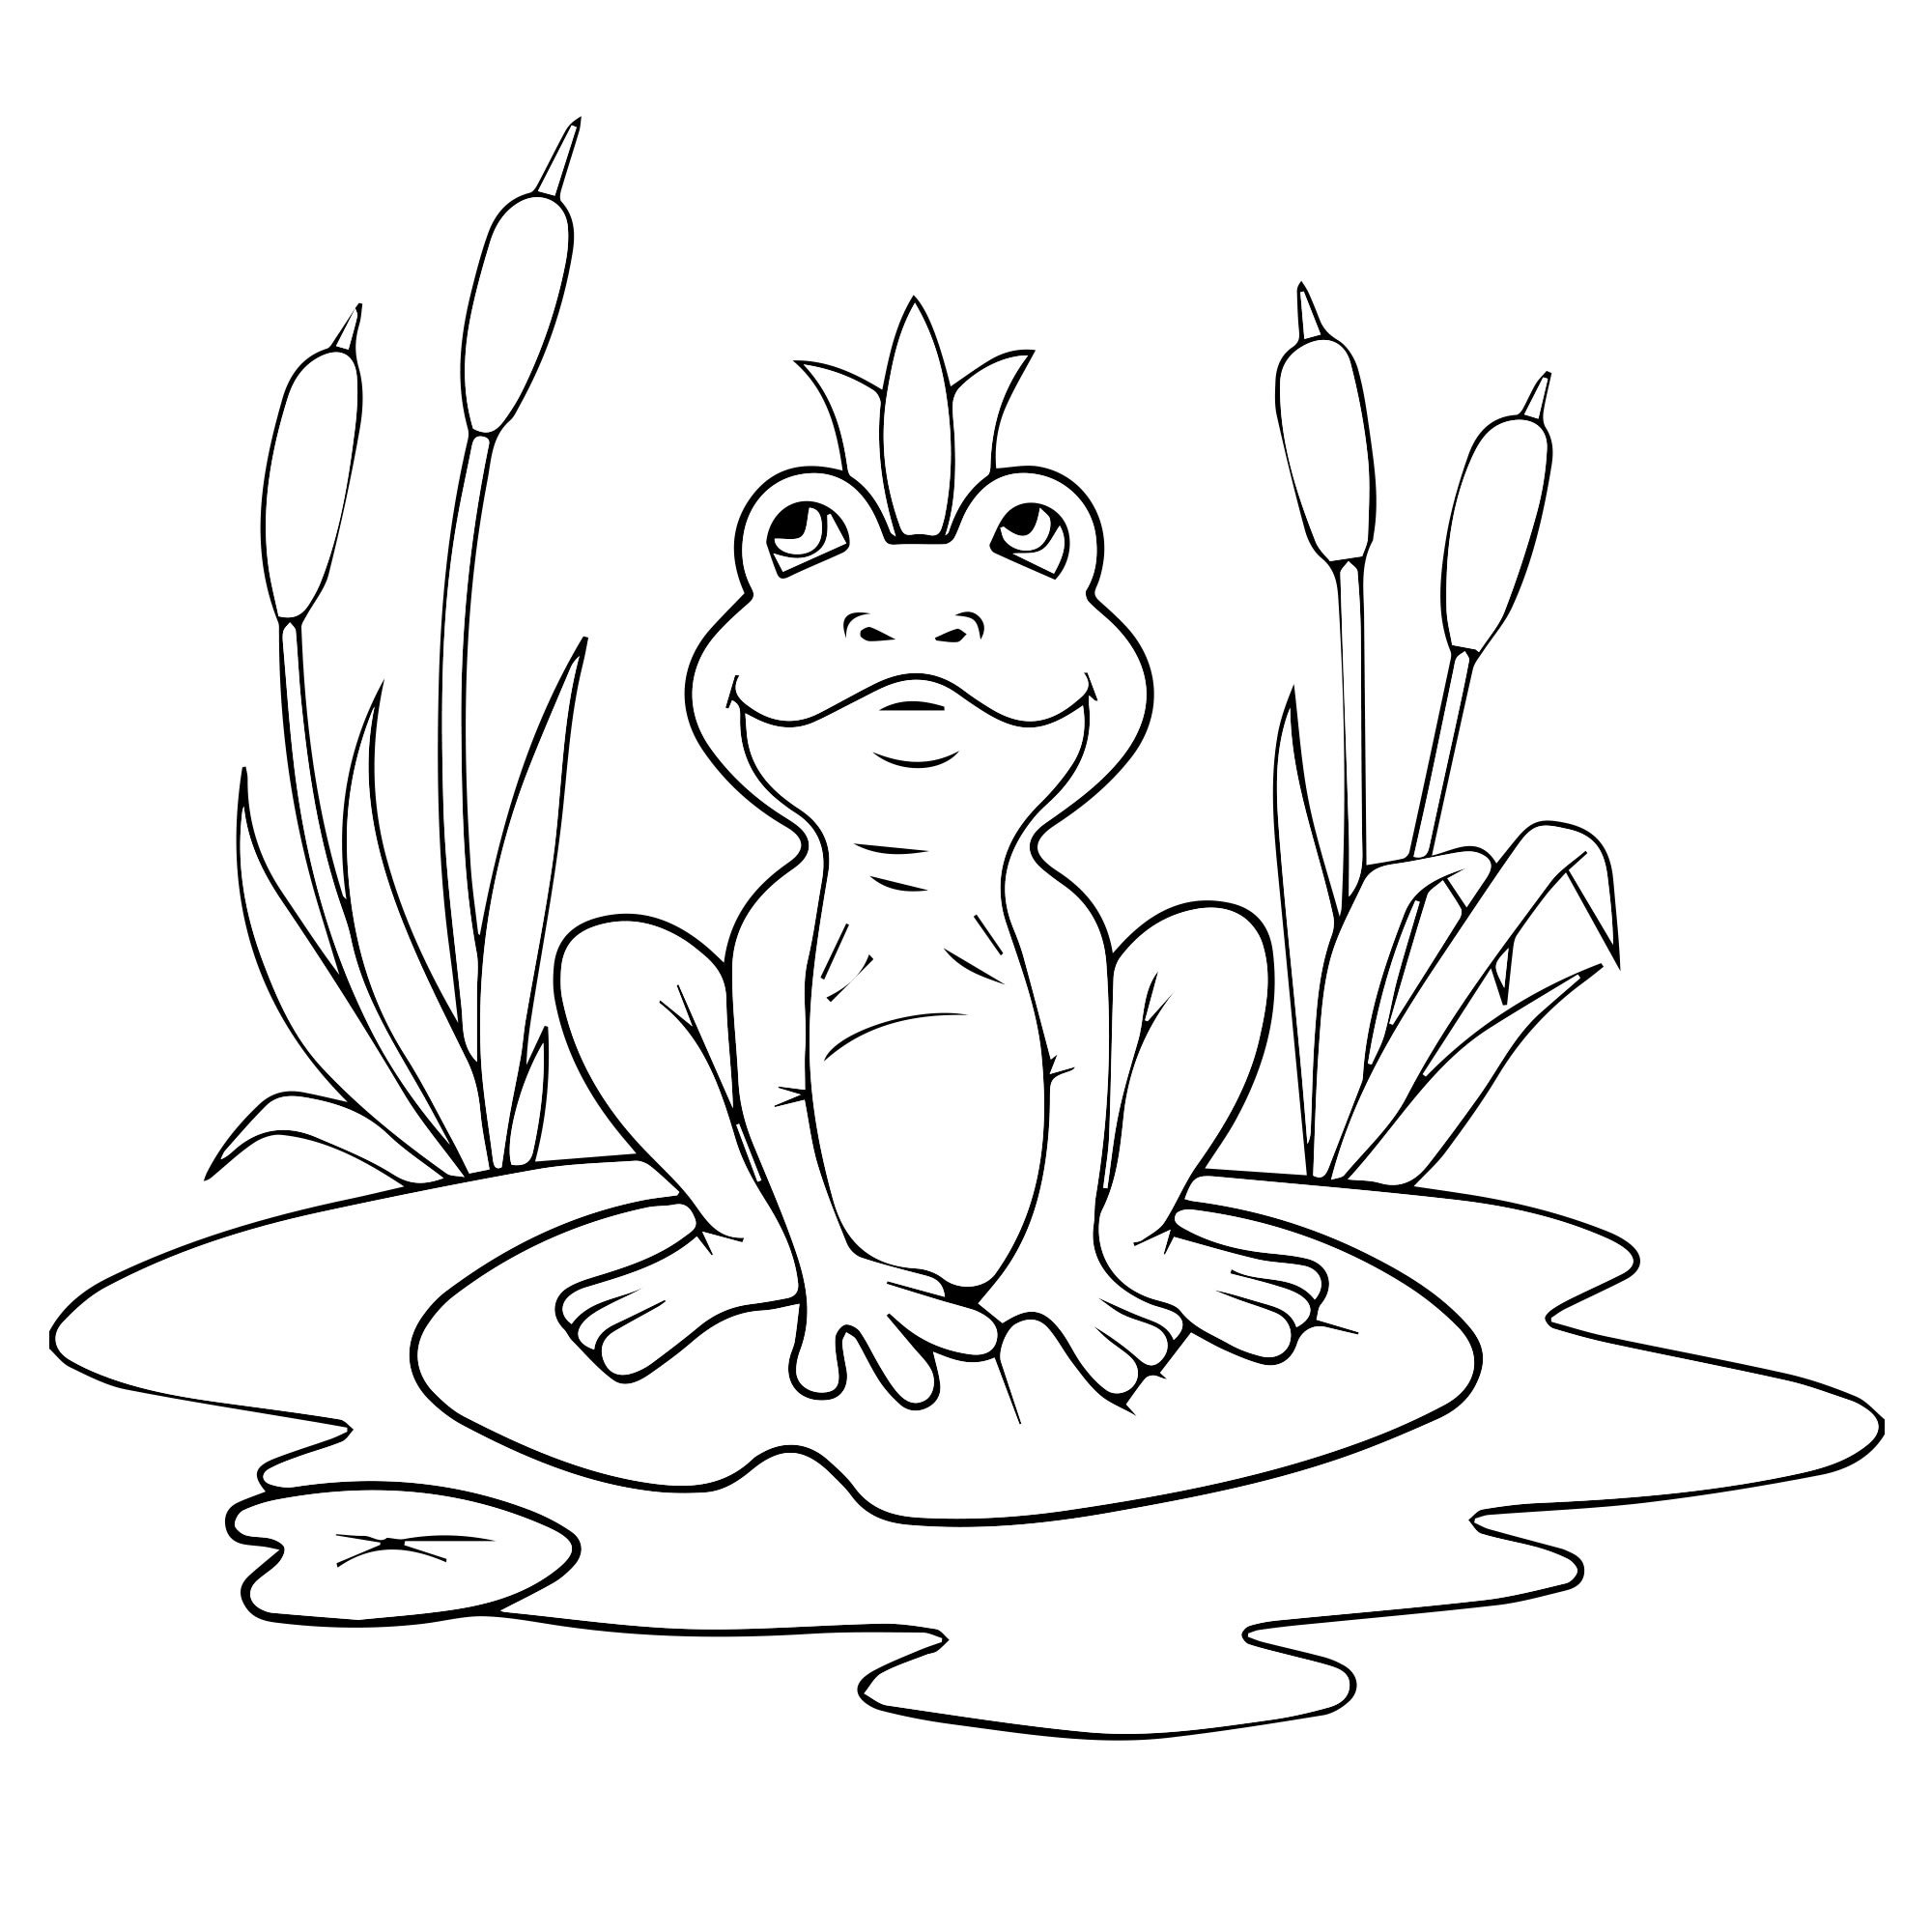 Царевны лягушки поэтапно. Разукрашка Царевна лягушка. Царевна-лягушка сказка раскраска для детей. Нарисовать иллюстрацию к сказке Царевна лягушка. Раскраска по сказке Царевна лягушка для детей.